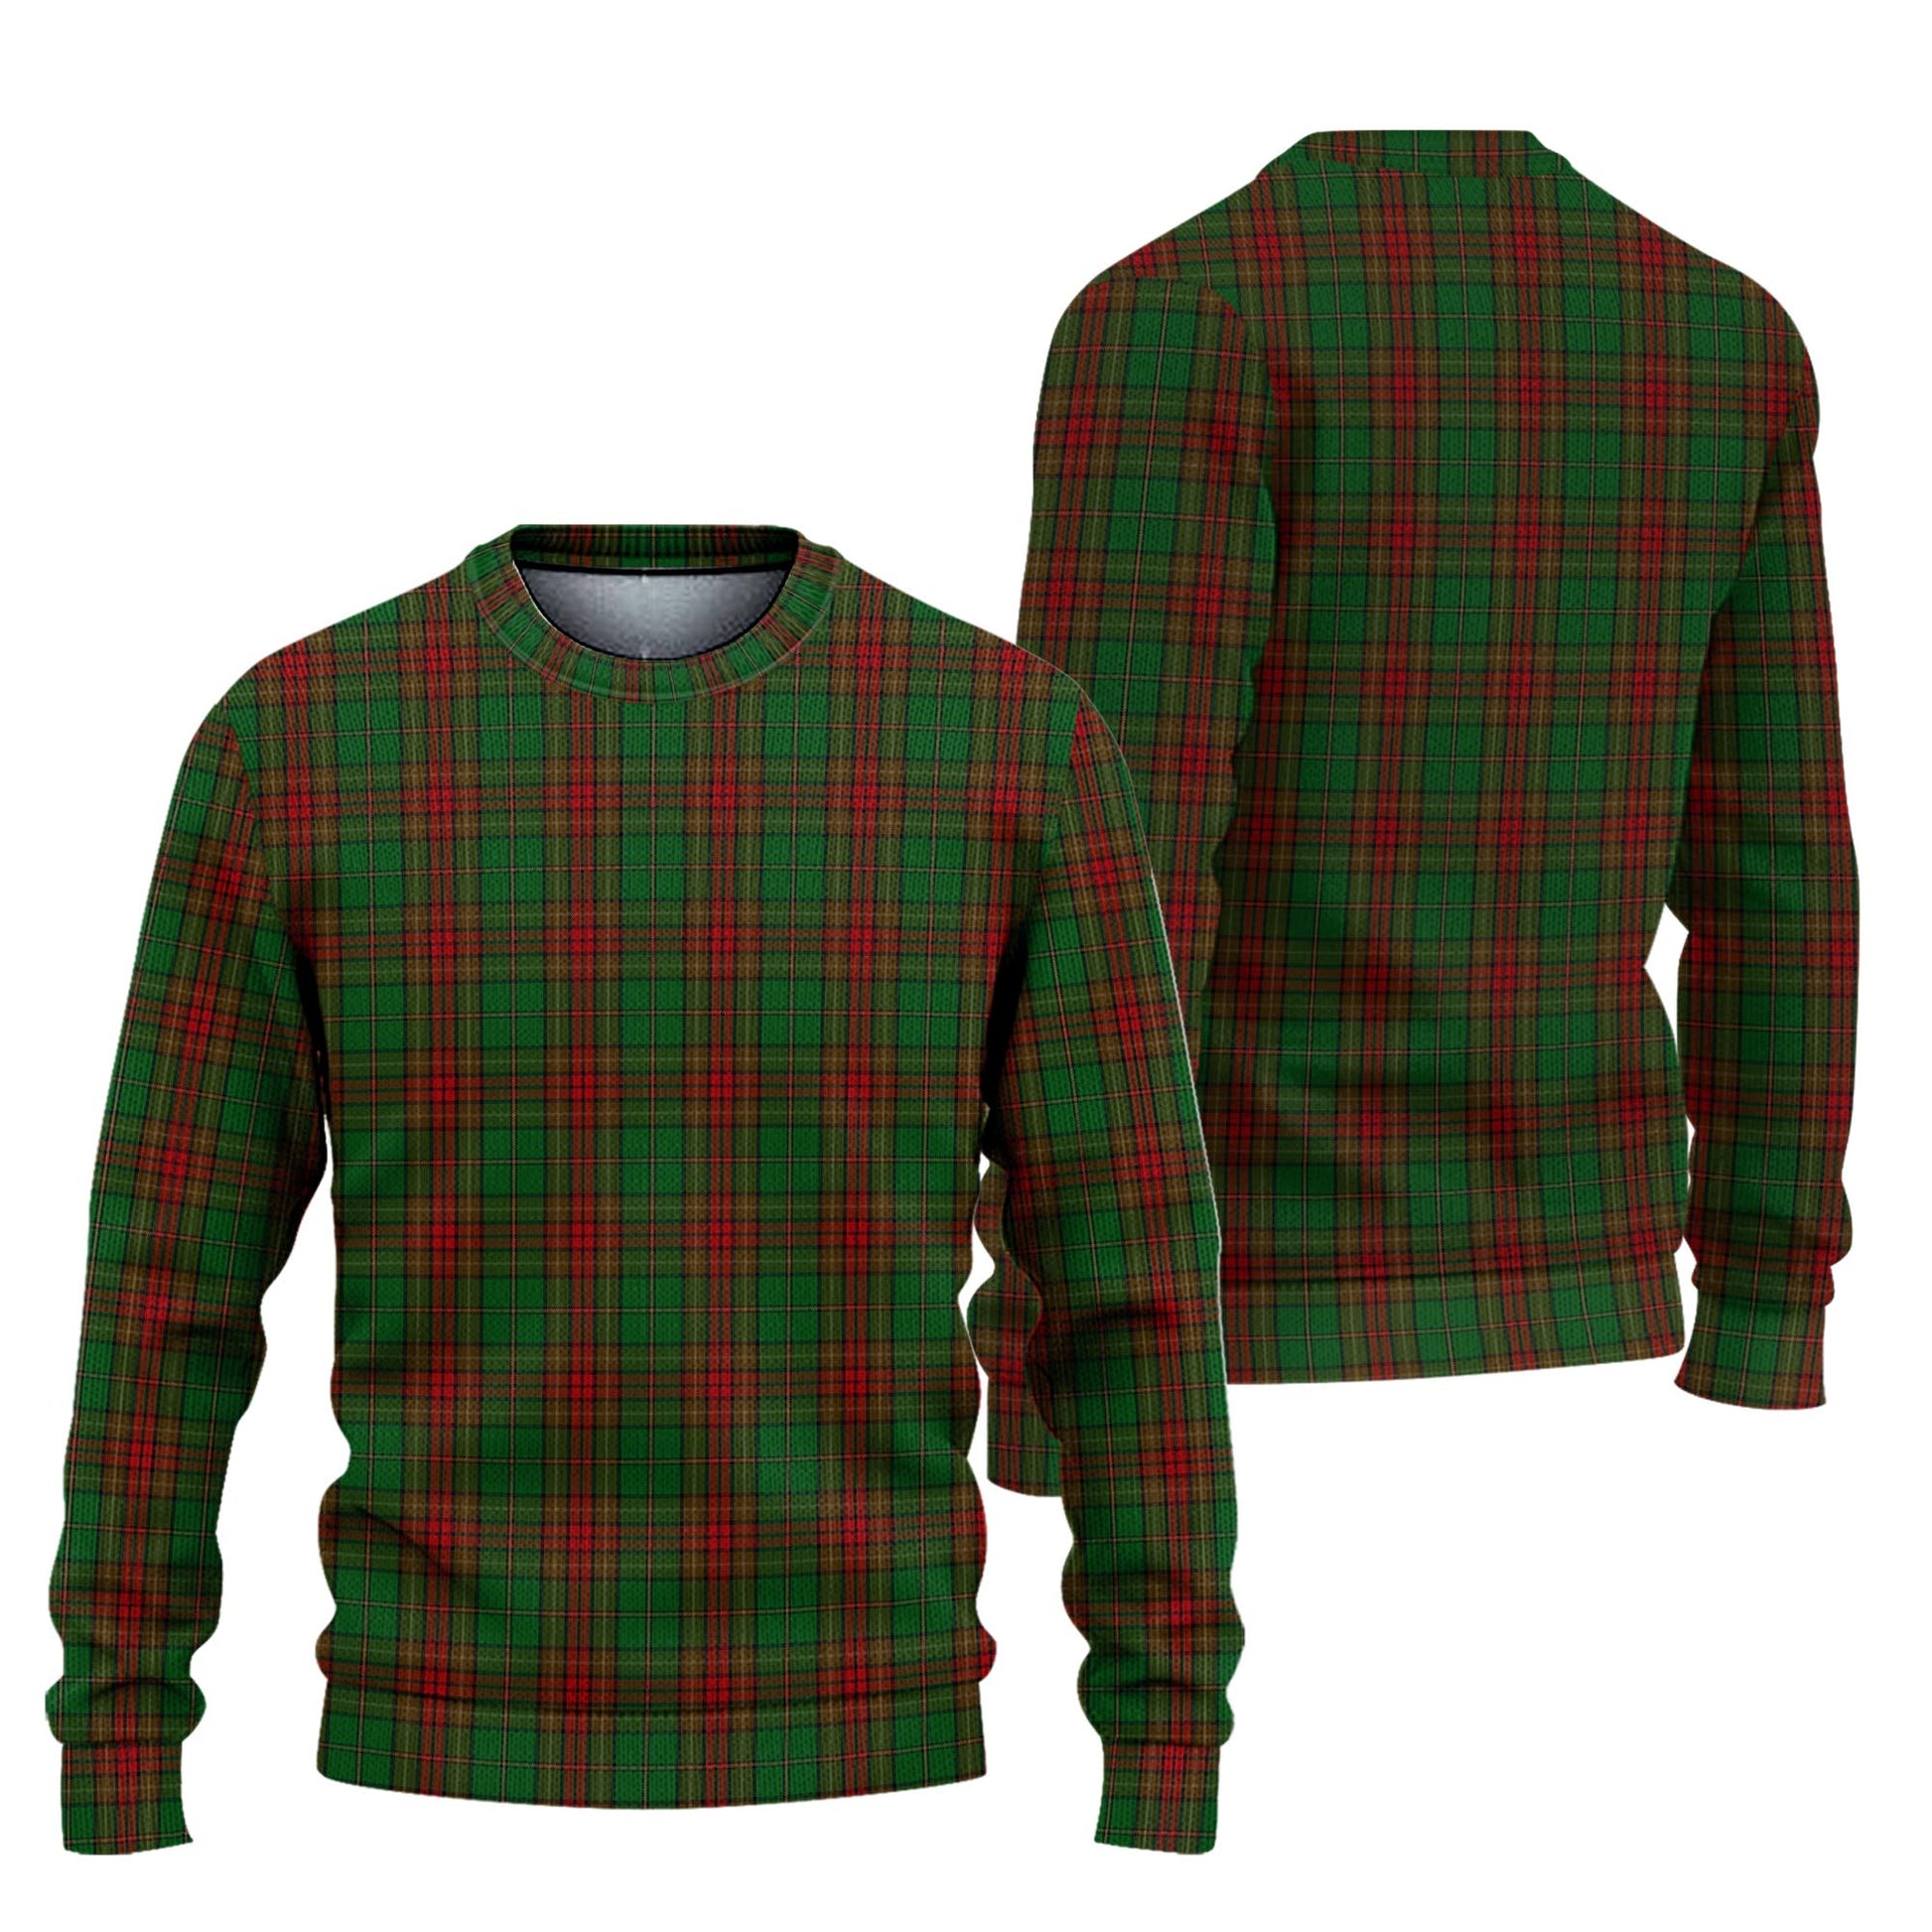 Cavan County Ireland Tartan Knitted Sweater Unisex - Tartanvibesclothing